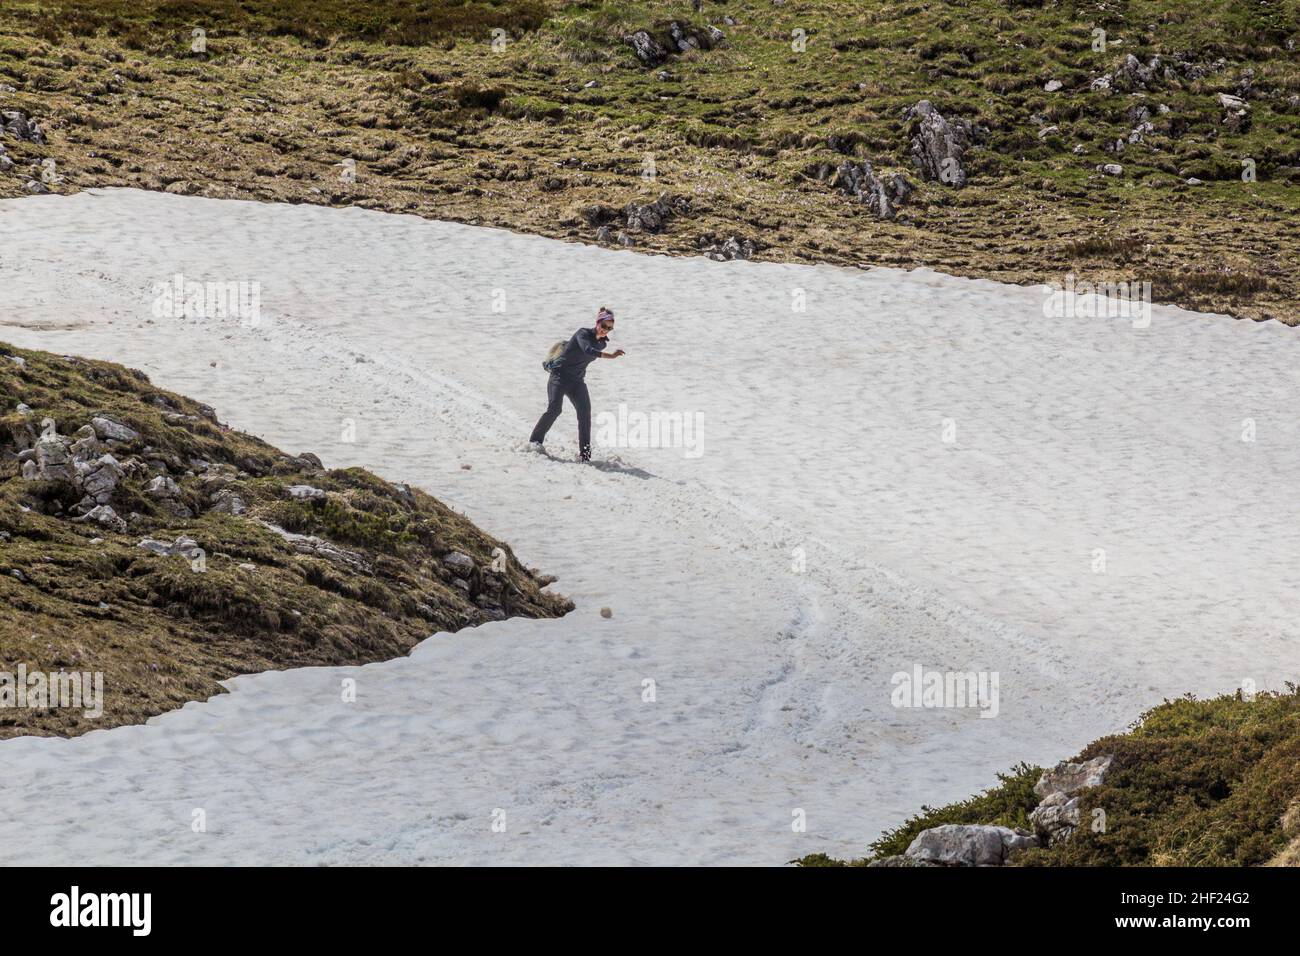 DURMITOR, MONTENEGRO - 6 DE JUNIO de 2019: Excursionista disfrutando de la nieve en el parque nacional Durmitor, Montenegro. Foto de stock